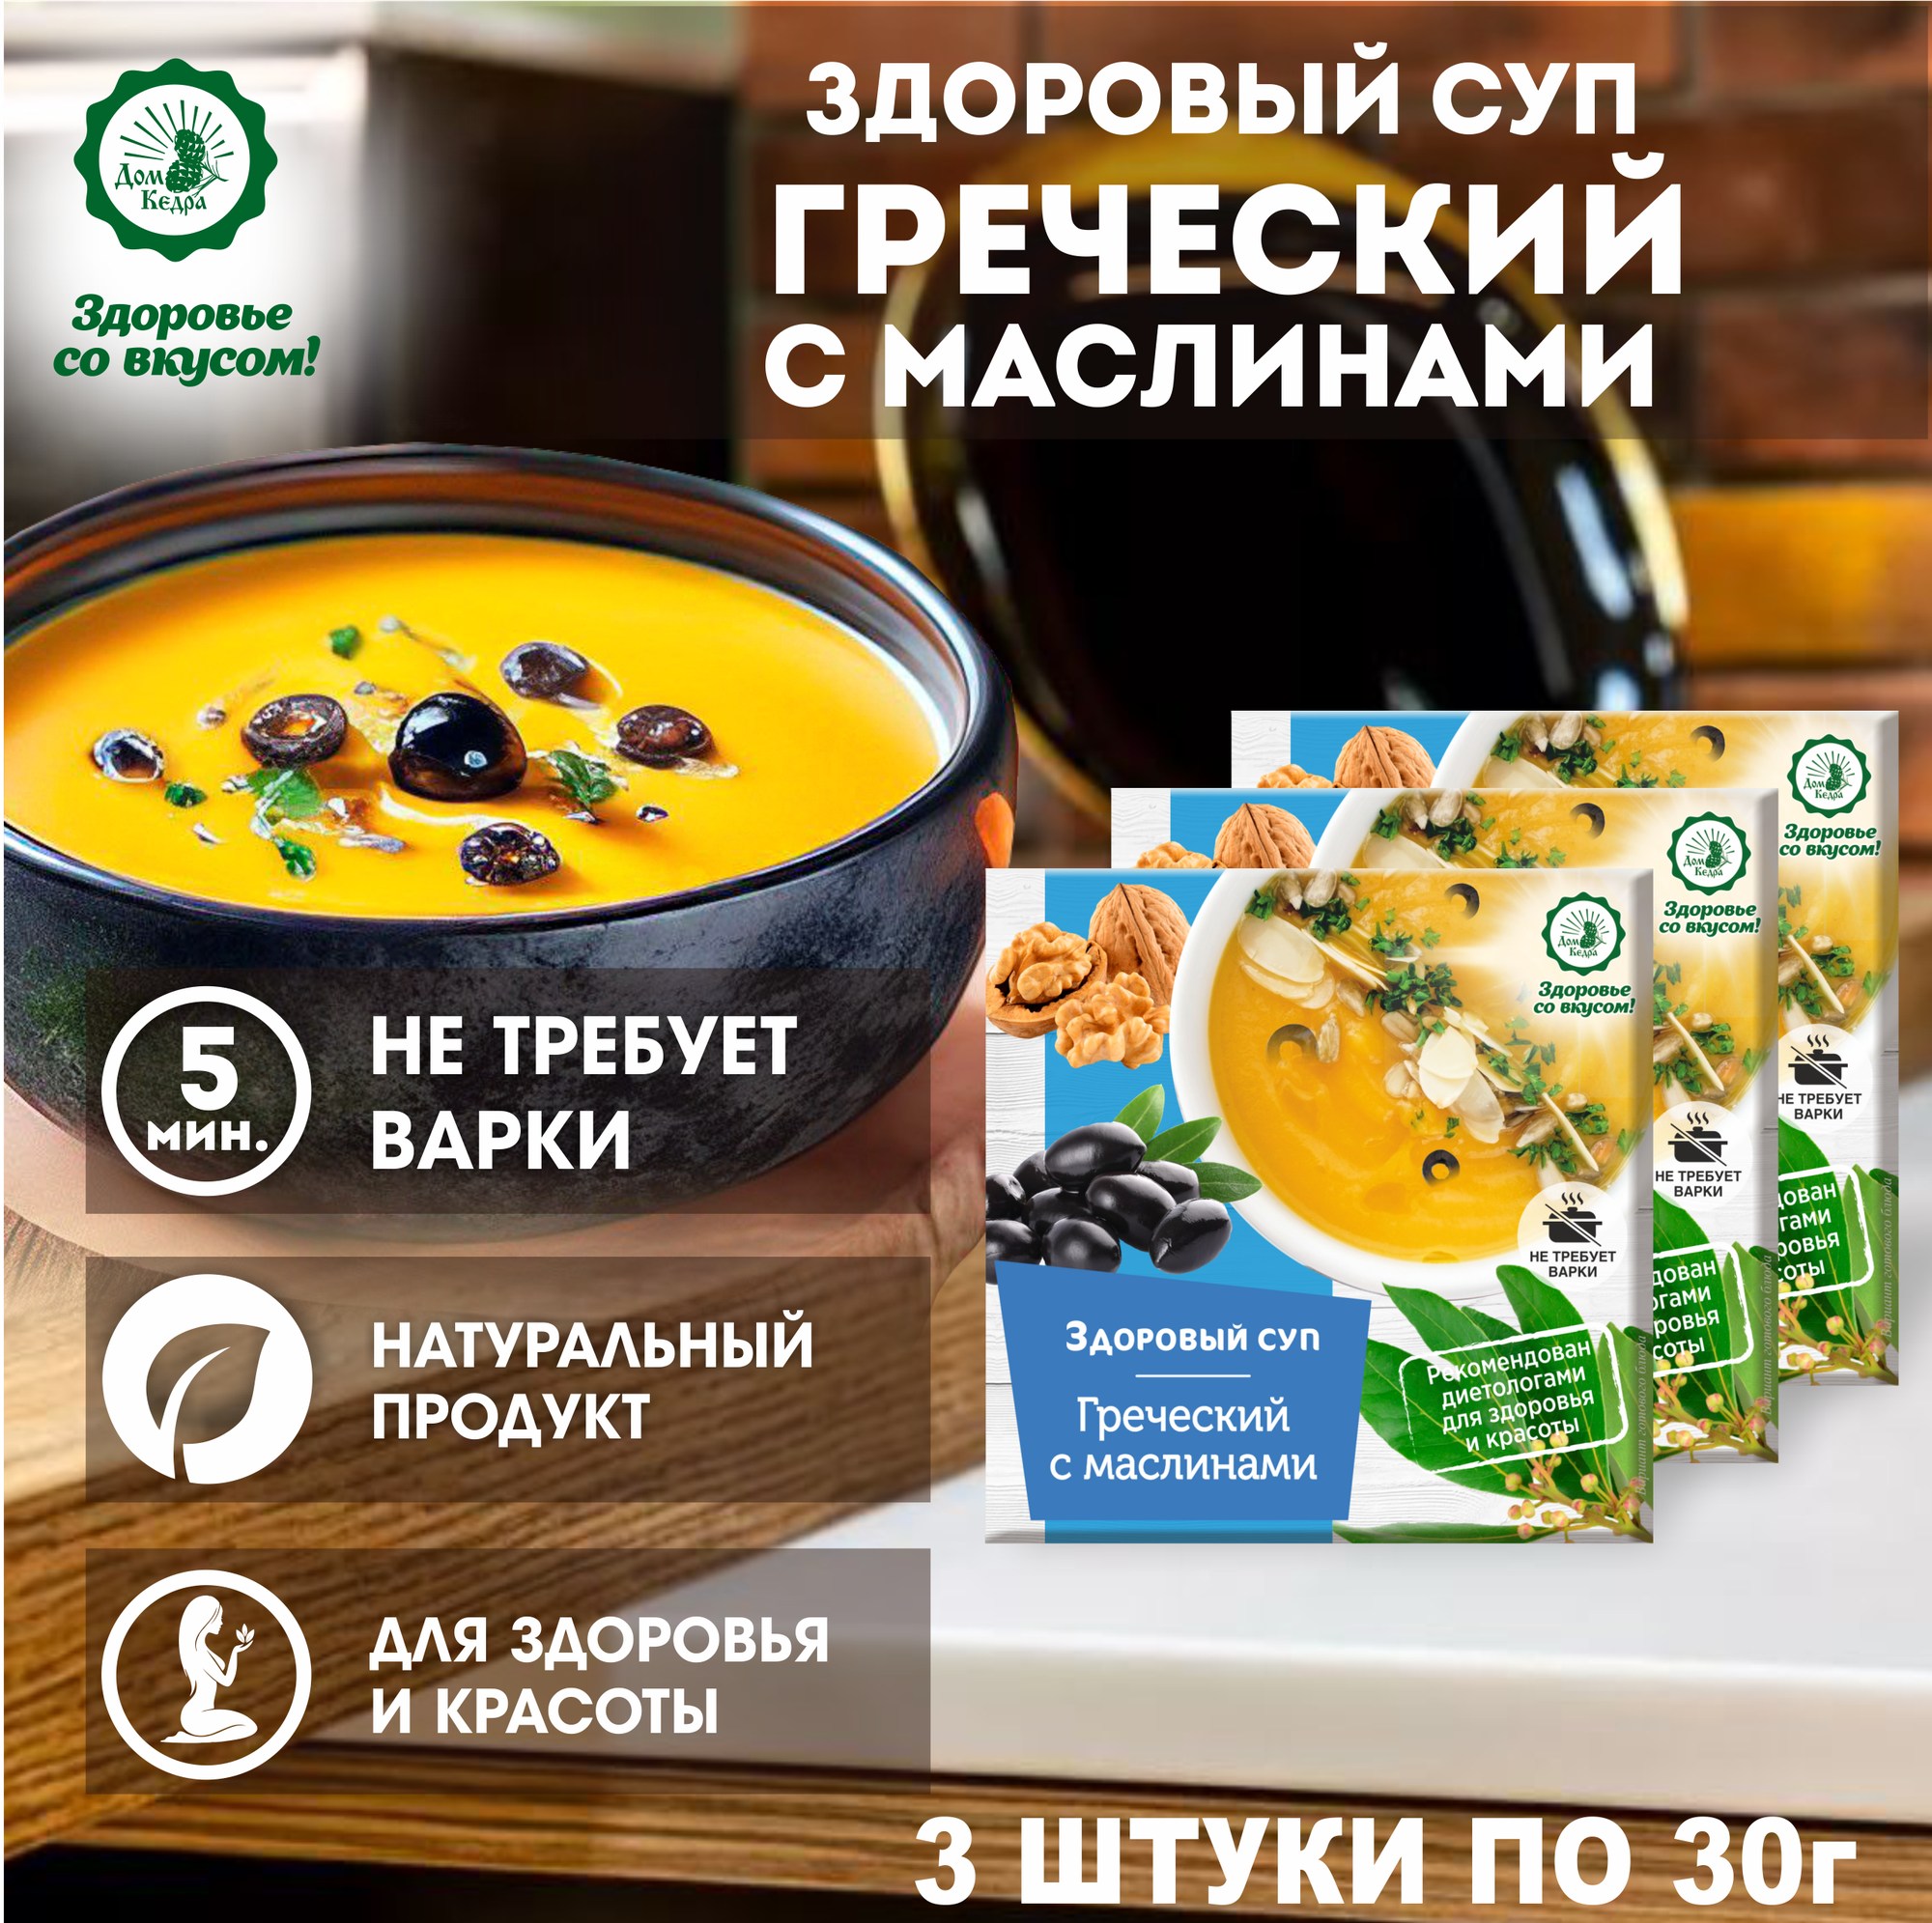 Диетический суп быстрого приготовления "Греческий" с маслинами, 3шт